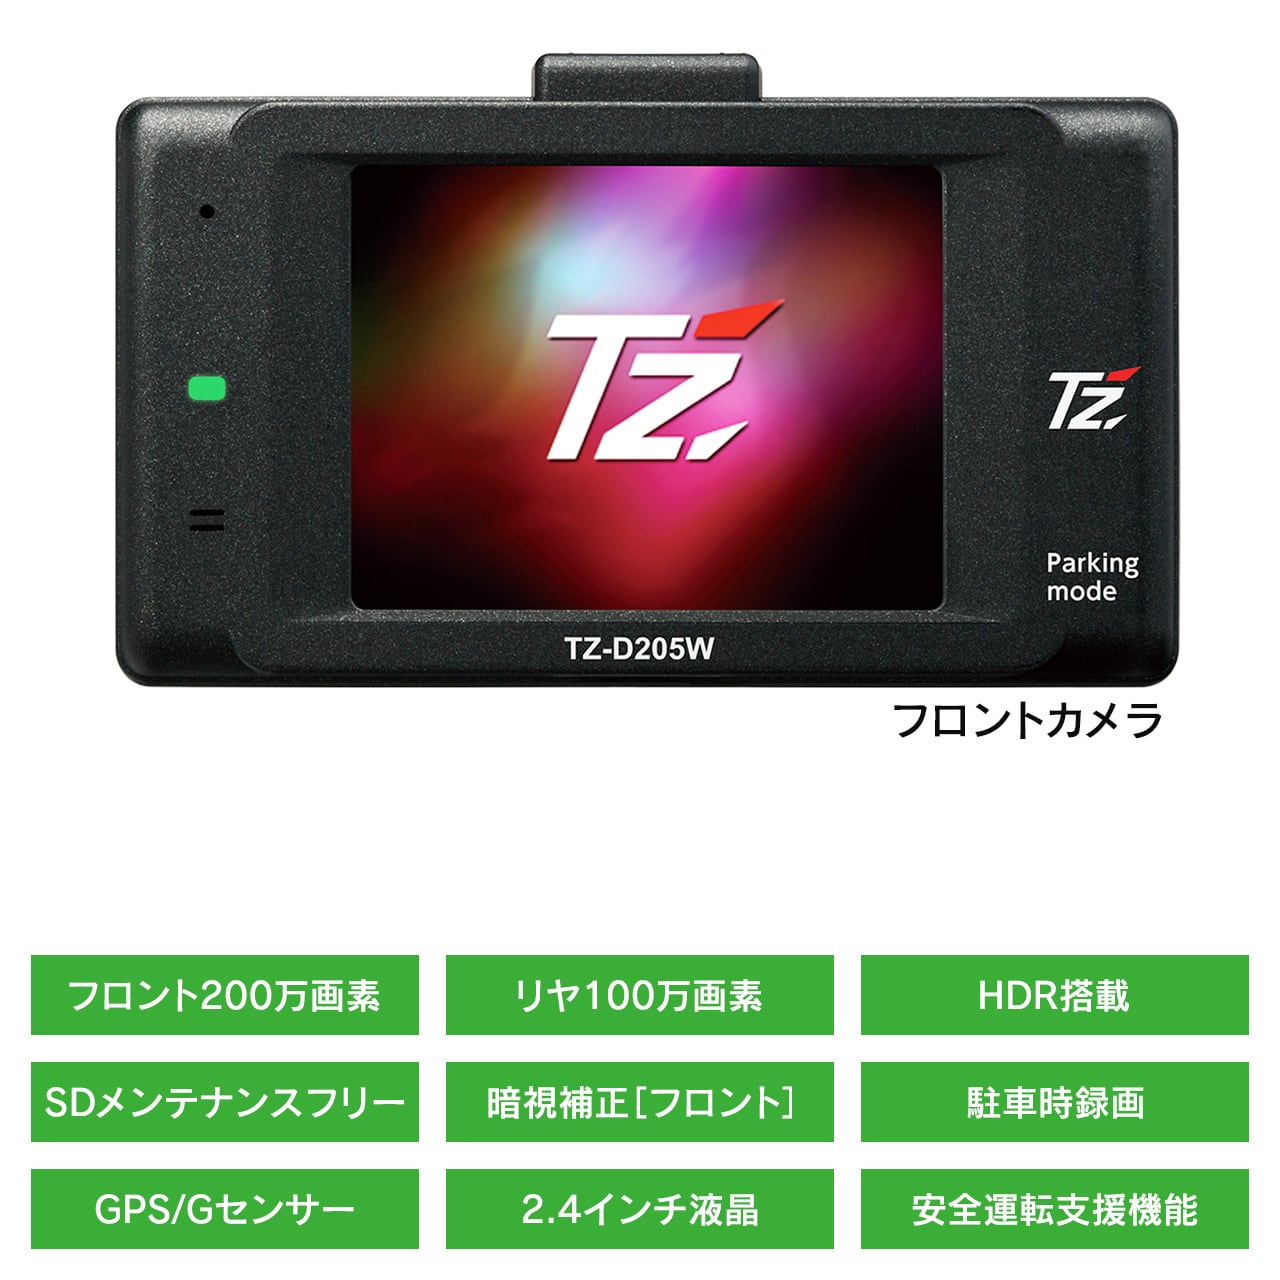 【TZ】2カメラ ドライブレコーダー TZ-D205W(V9TZDR200) | 滋賀のいちおし トト屋 powered by BASE